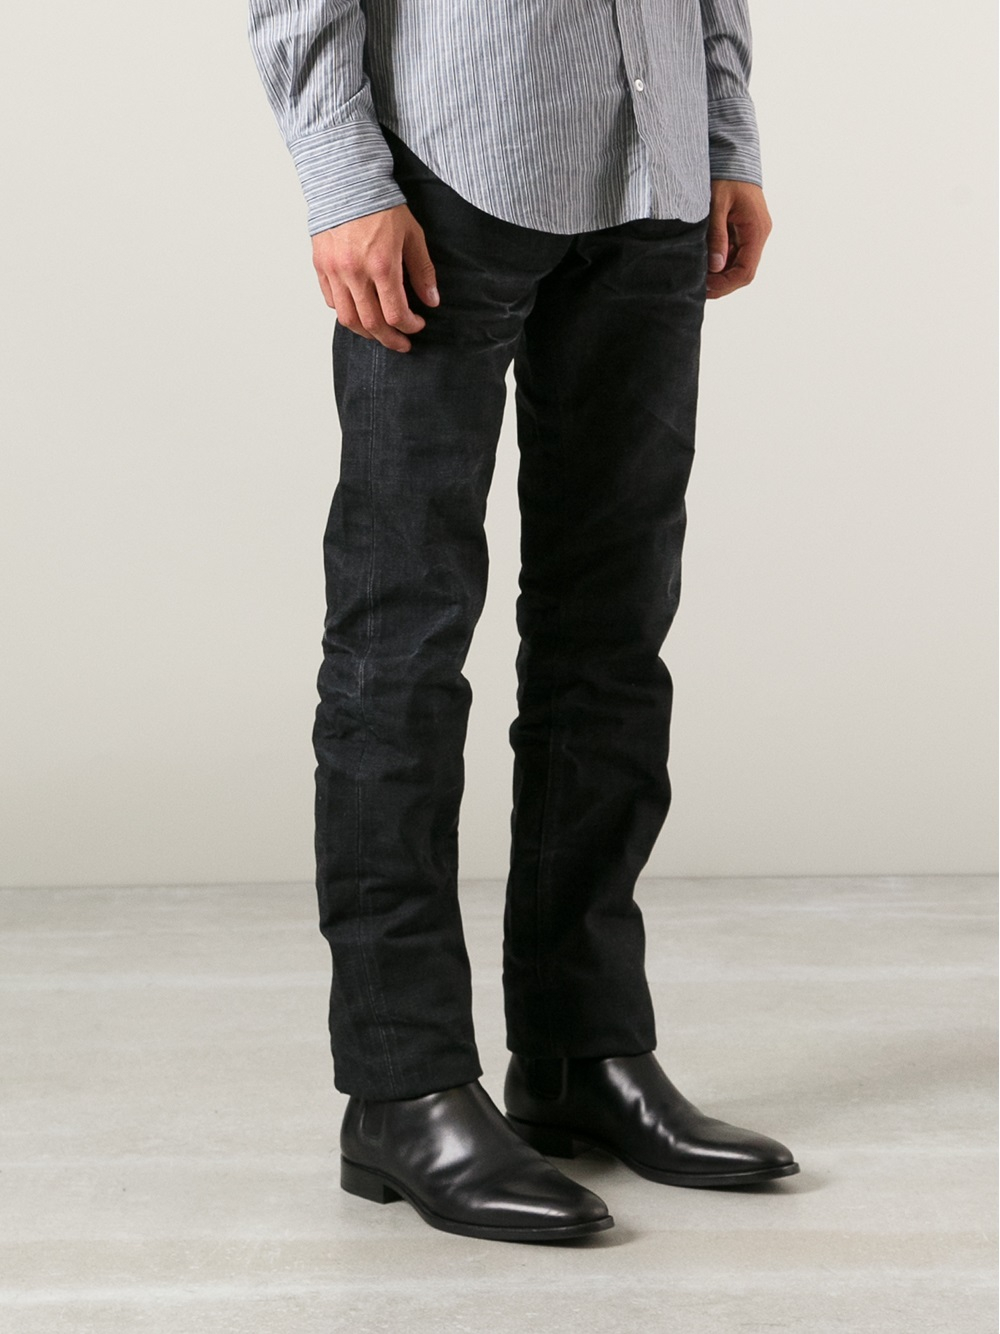 PRPS Noir Straight Leg Jeans in Black for Men - Lyst